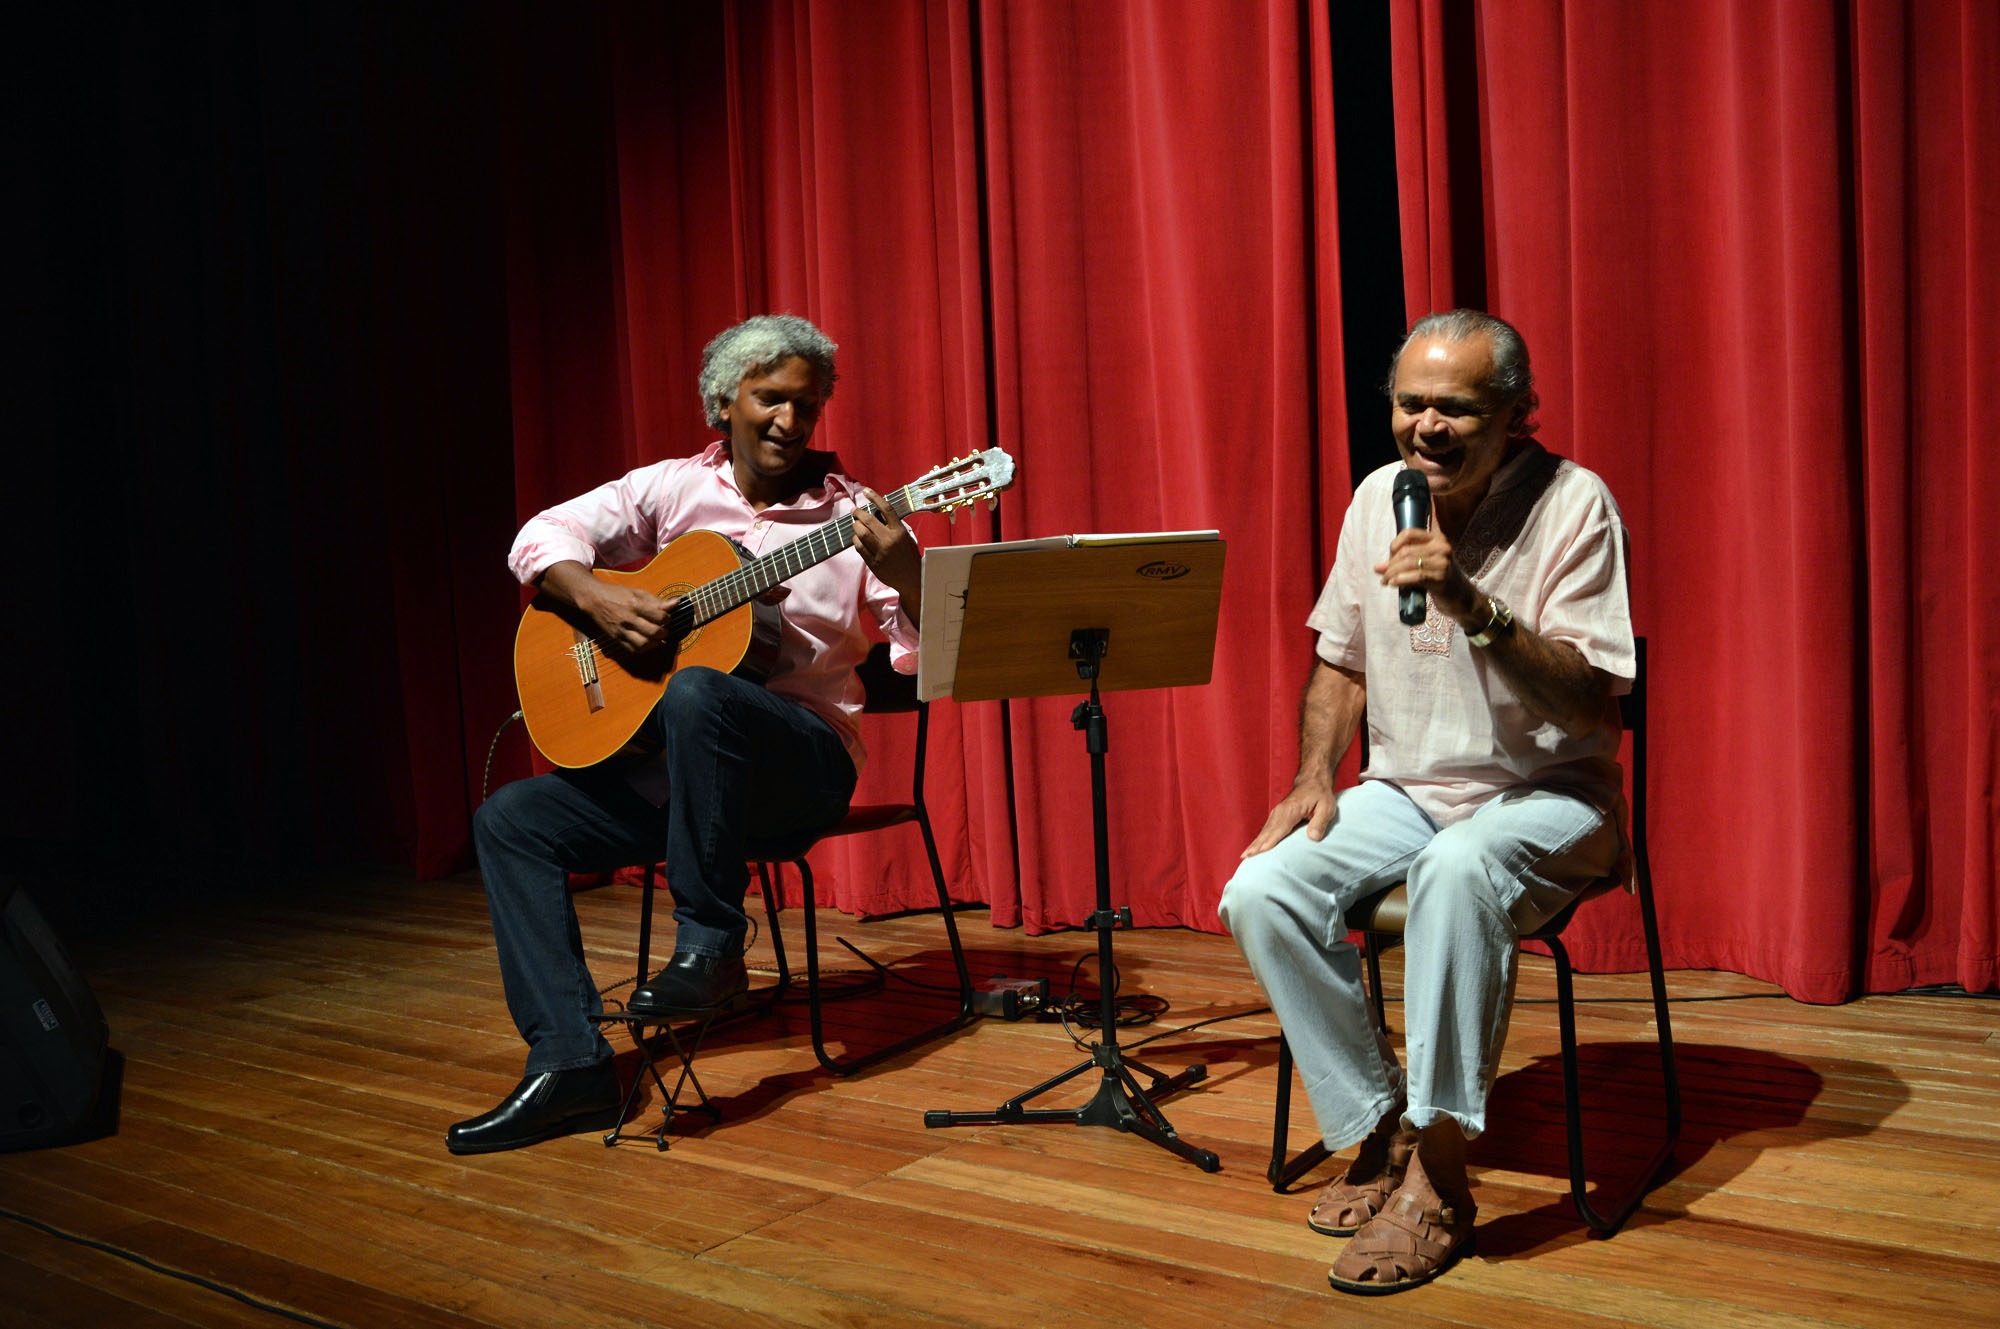  Na abertura do Seminário, houve apresentação musical com Felipe Valoz e Chico Aafa.